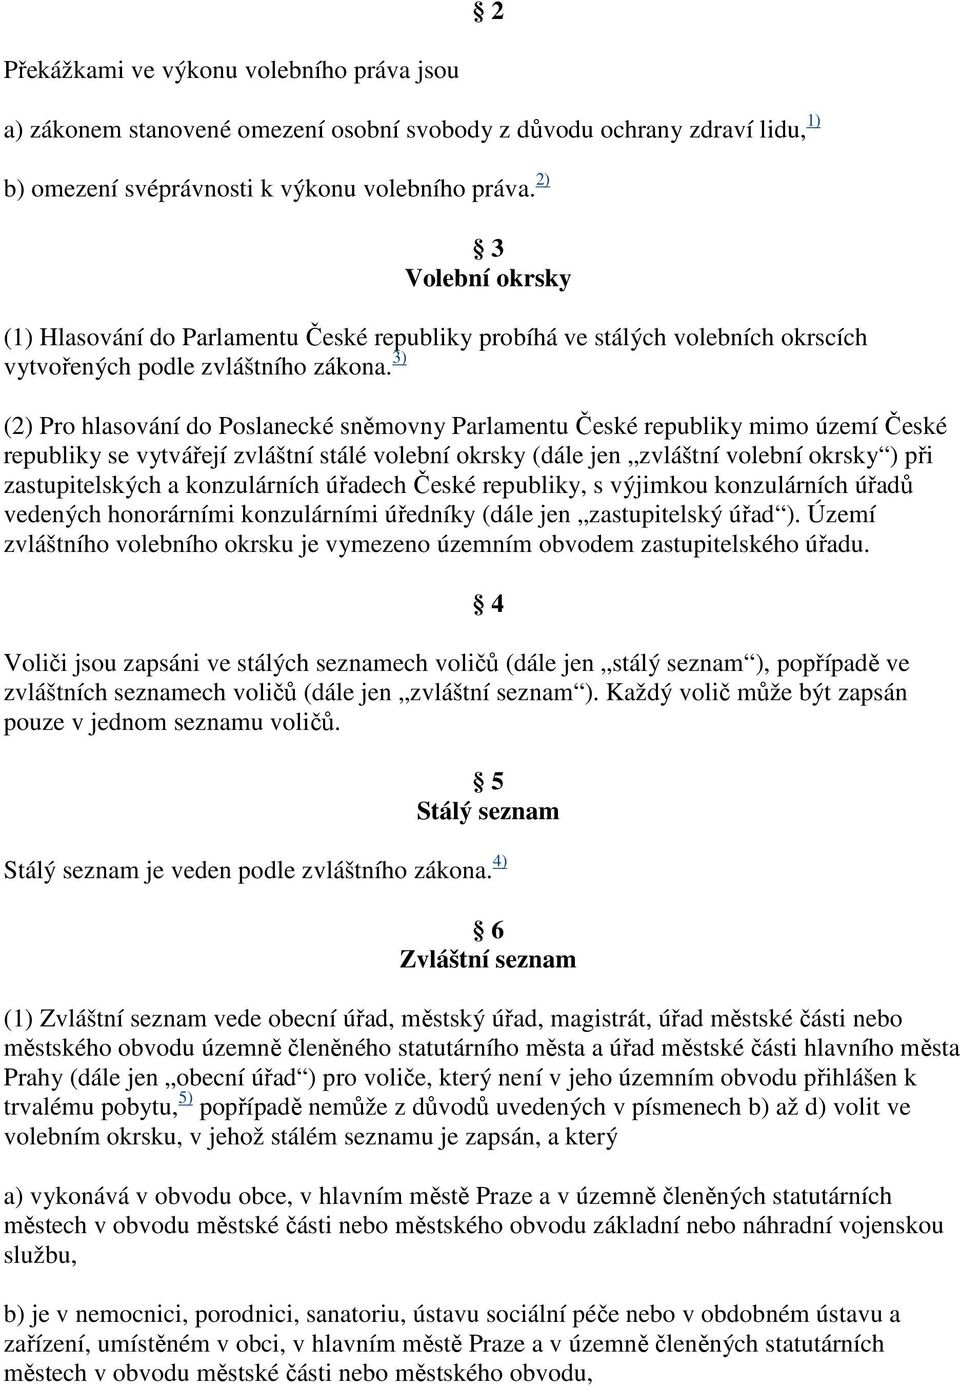 3) (2) Pro hlasování do Poslanecké sněmovny Parlamentu České republiky mimo území České republiky se vytvářejí zvláštní stálé volební okrsky (dále jen zvláštní volební okrsky ) při zastupitelských a